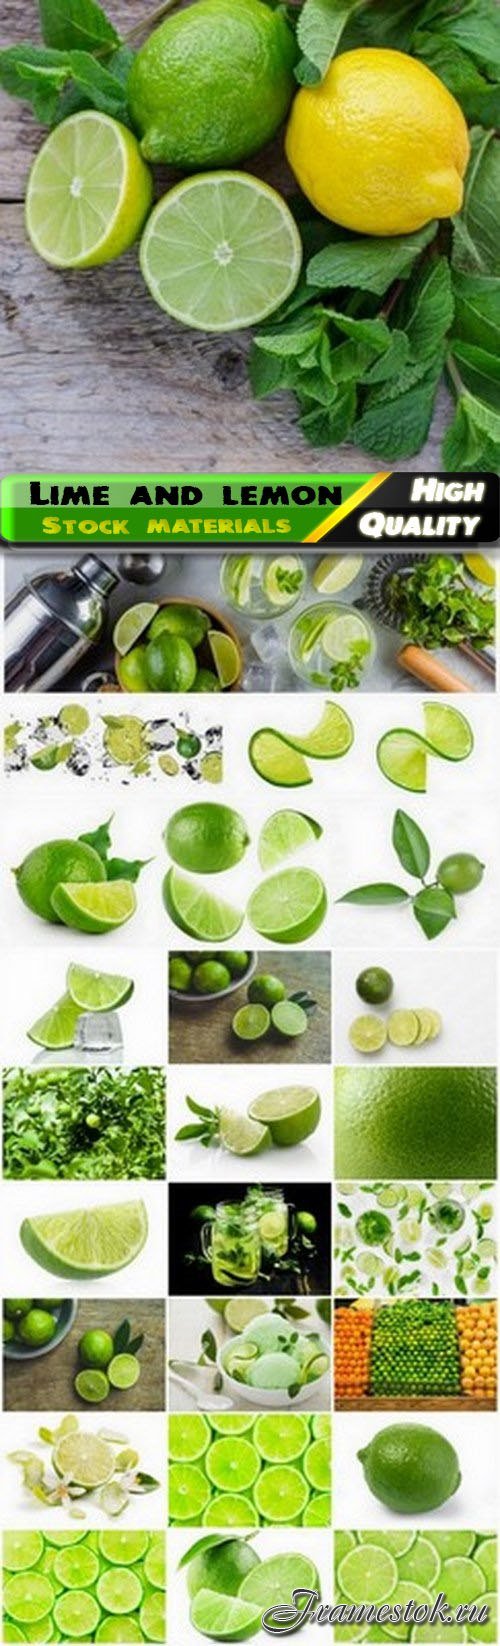 Lime fruit and slices of green lemon 25 HQ Jpg